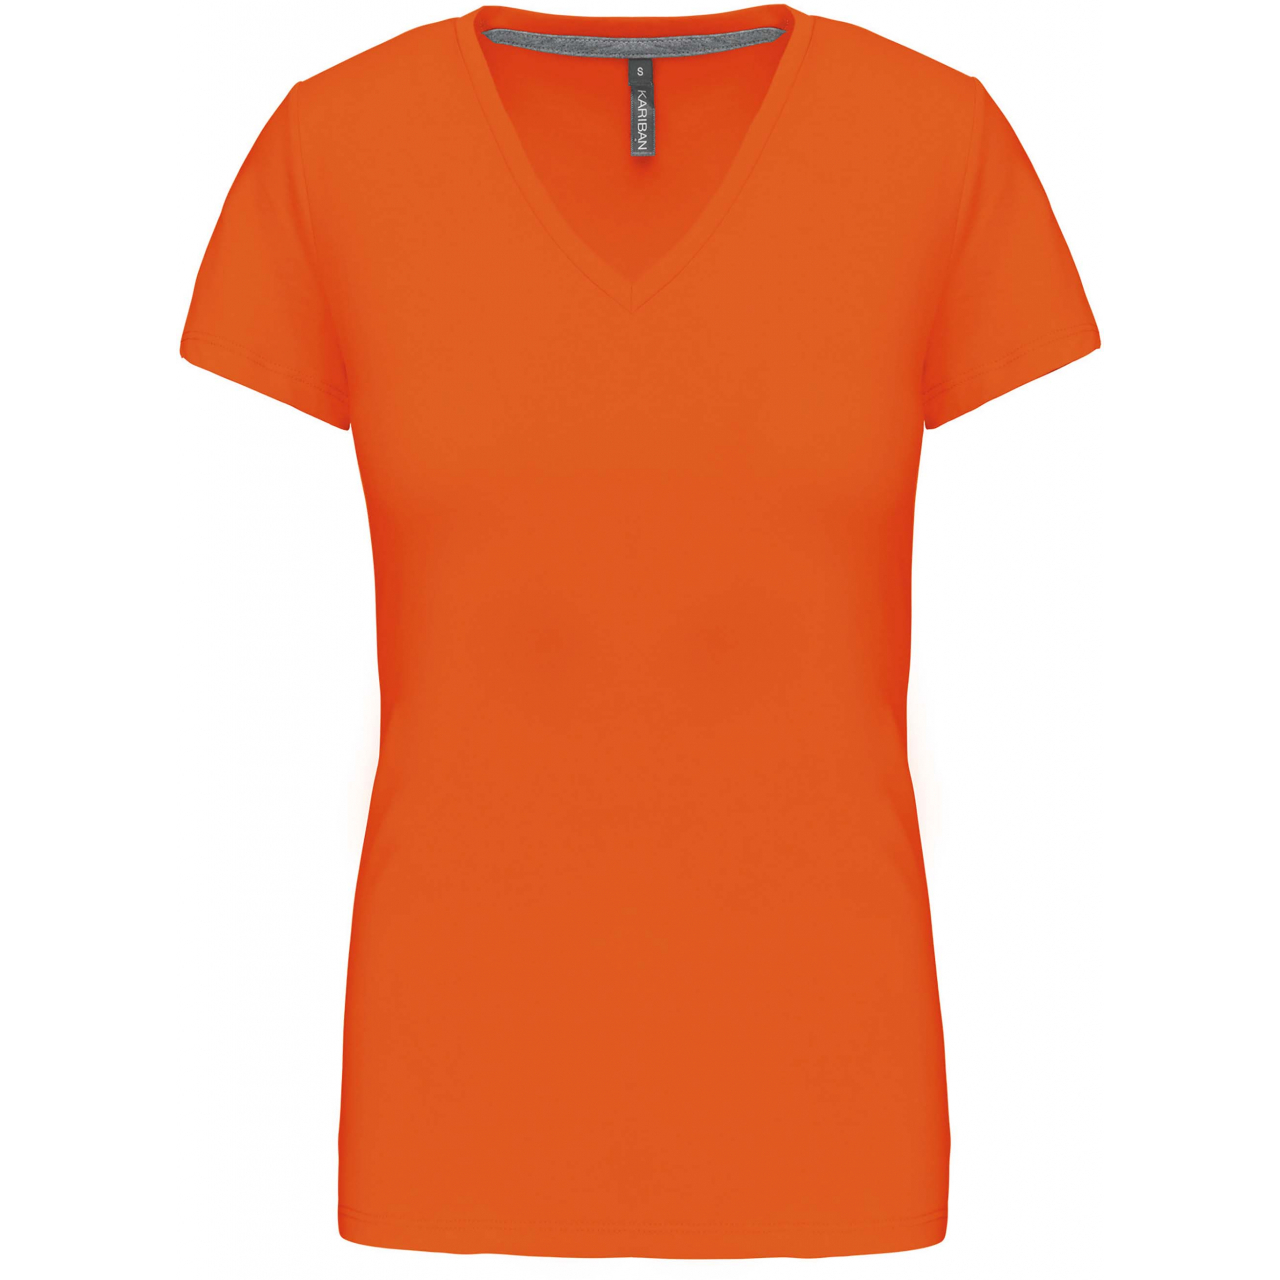 Dámské tričko Kariban V-neck s krátkým rukávem - oranžové, XL